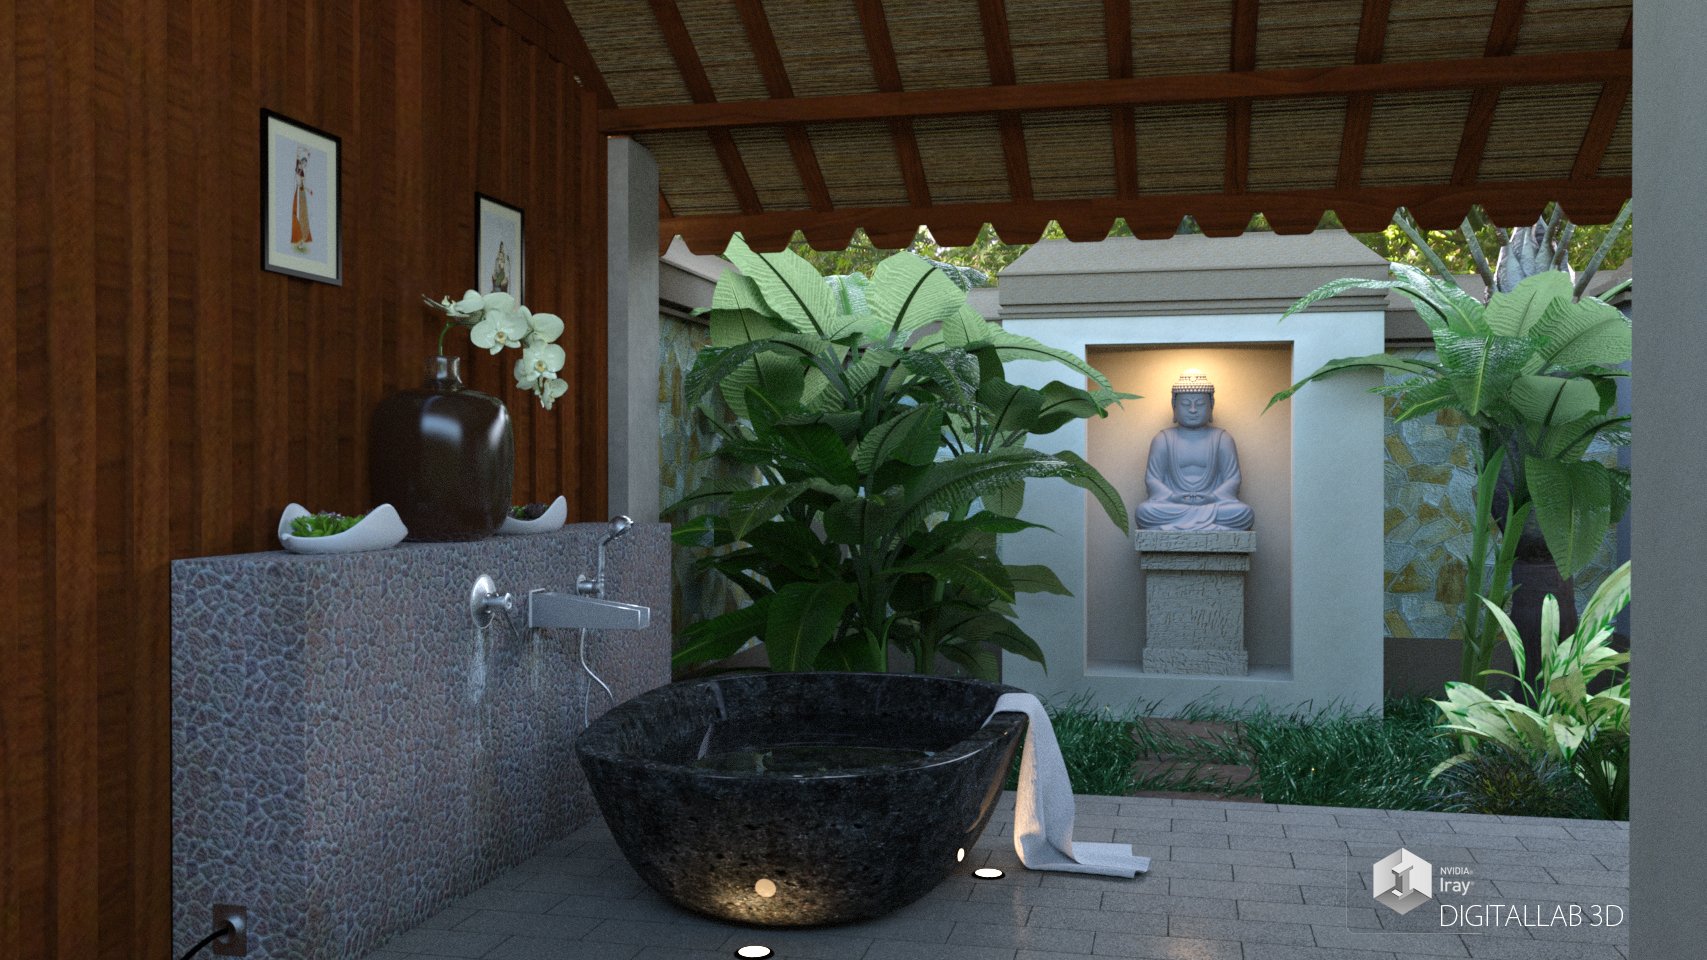 Zen Bath by: Digitallab3D, 3D Models by Daz 3D